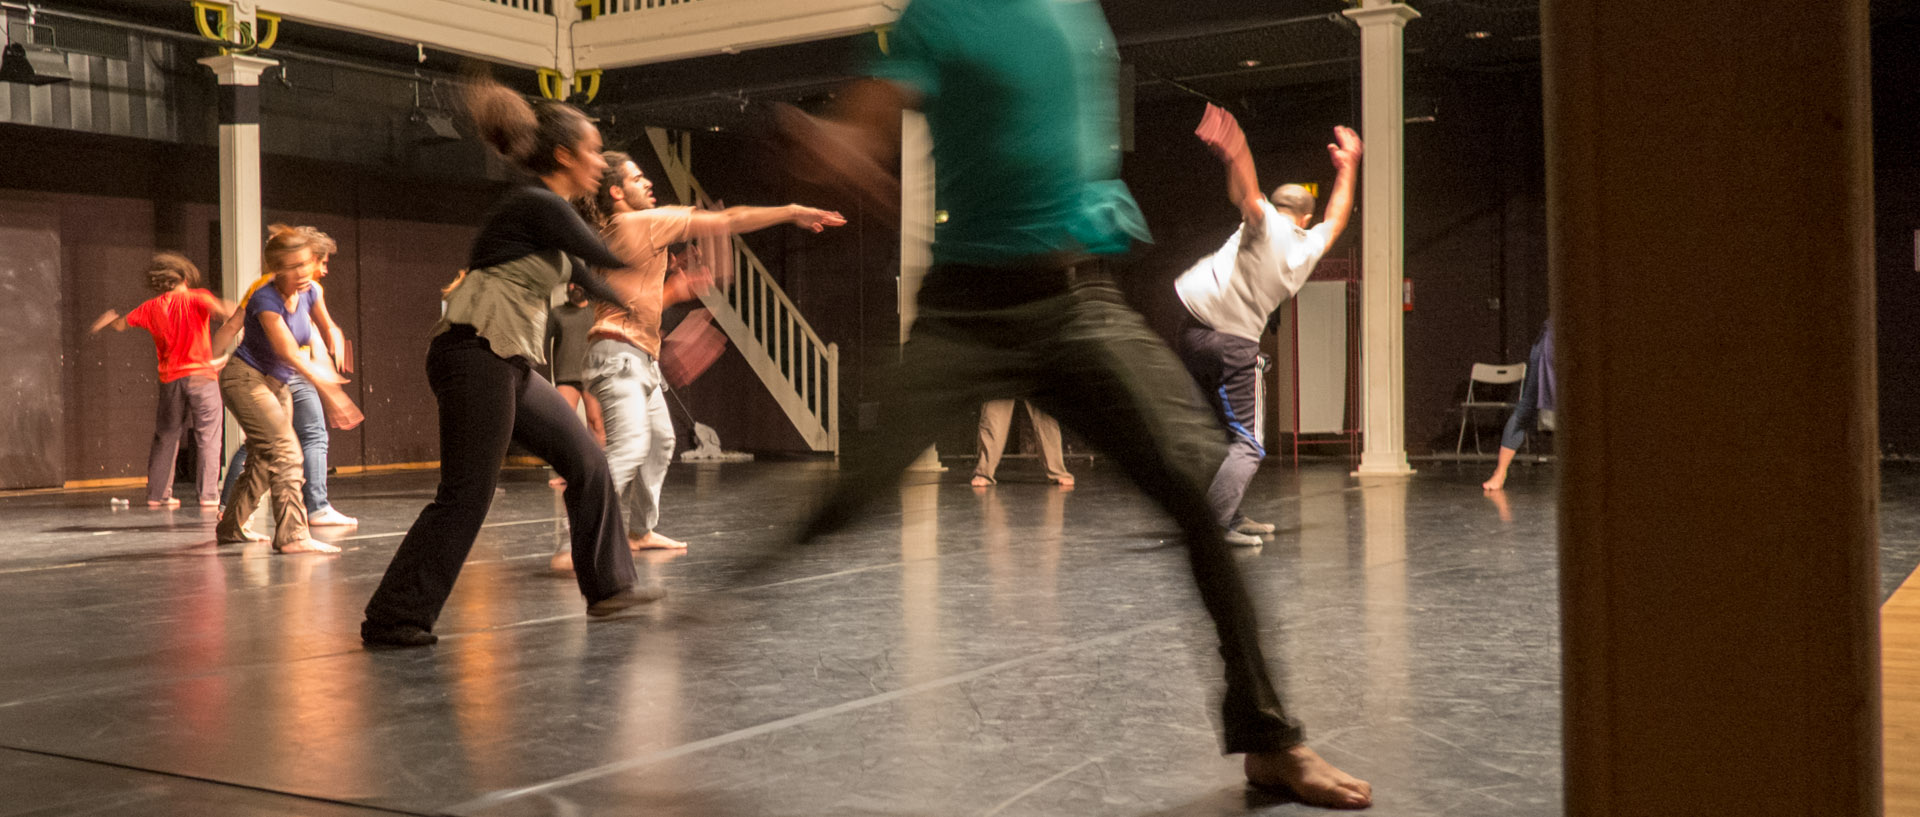 Répétition publique de Danse à Lille : Nobody knows, every body knows, projet de Laurence Rondoni avec la chorégraphe Sandrine Maisonneuve et les danseurs de Raqs 3a Tayer, au Gymnase, à Roubaix.